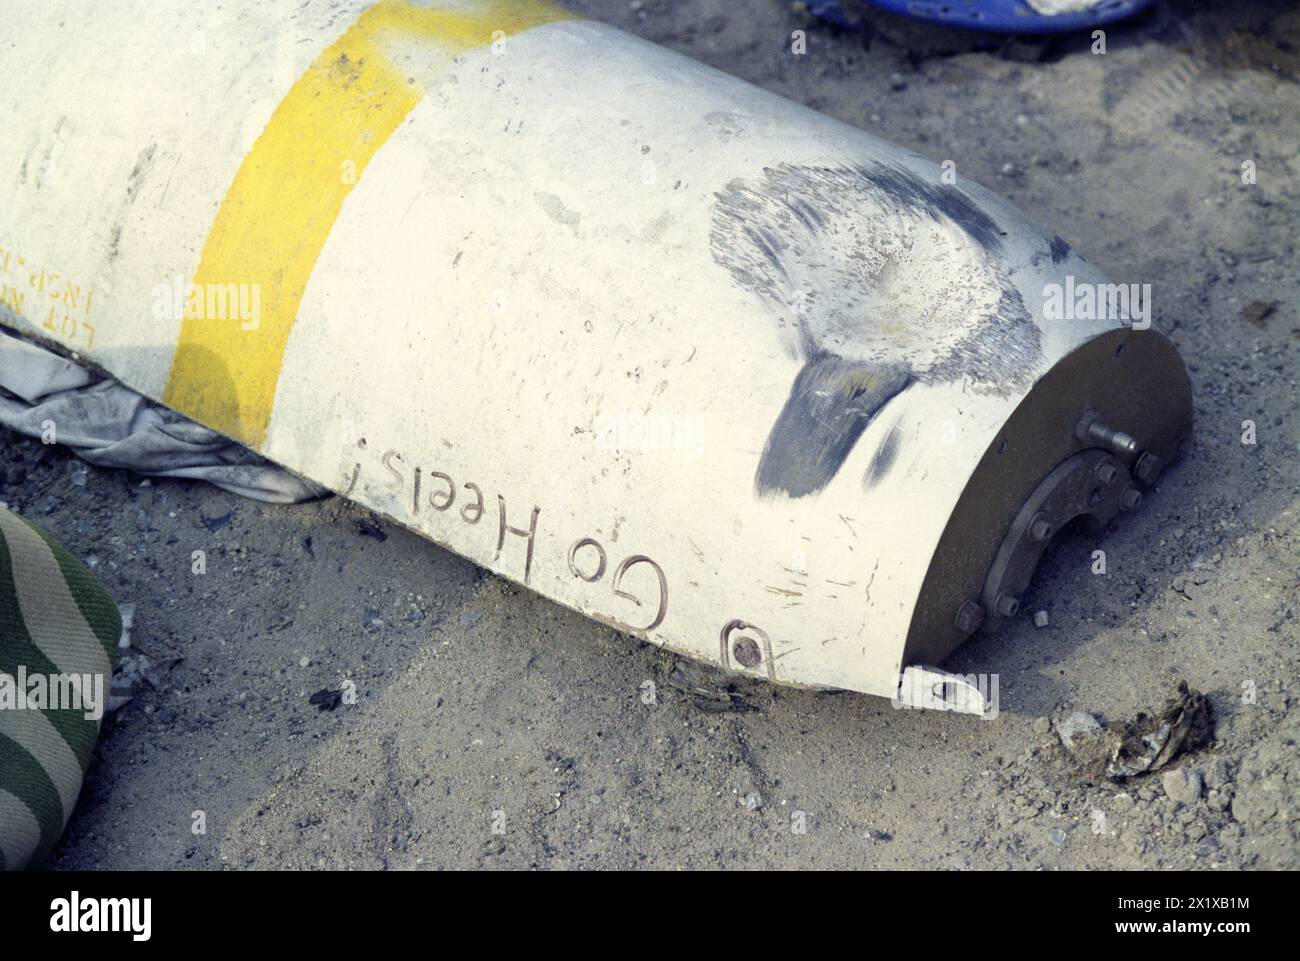 1er avril 1991 la moitié battue d'une bombe à sous-munitions américaine CBU-100 sur la route de la mort, à l'ouest de Koweït City sur la route principale de Bassorah. Banque D'Images